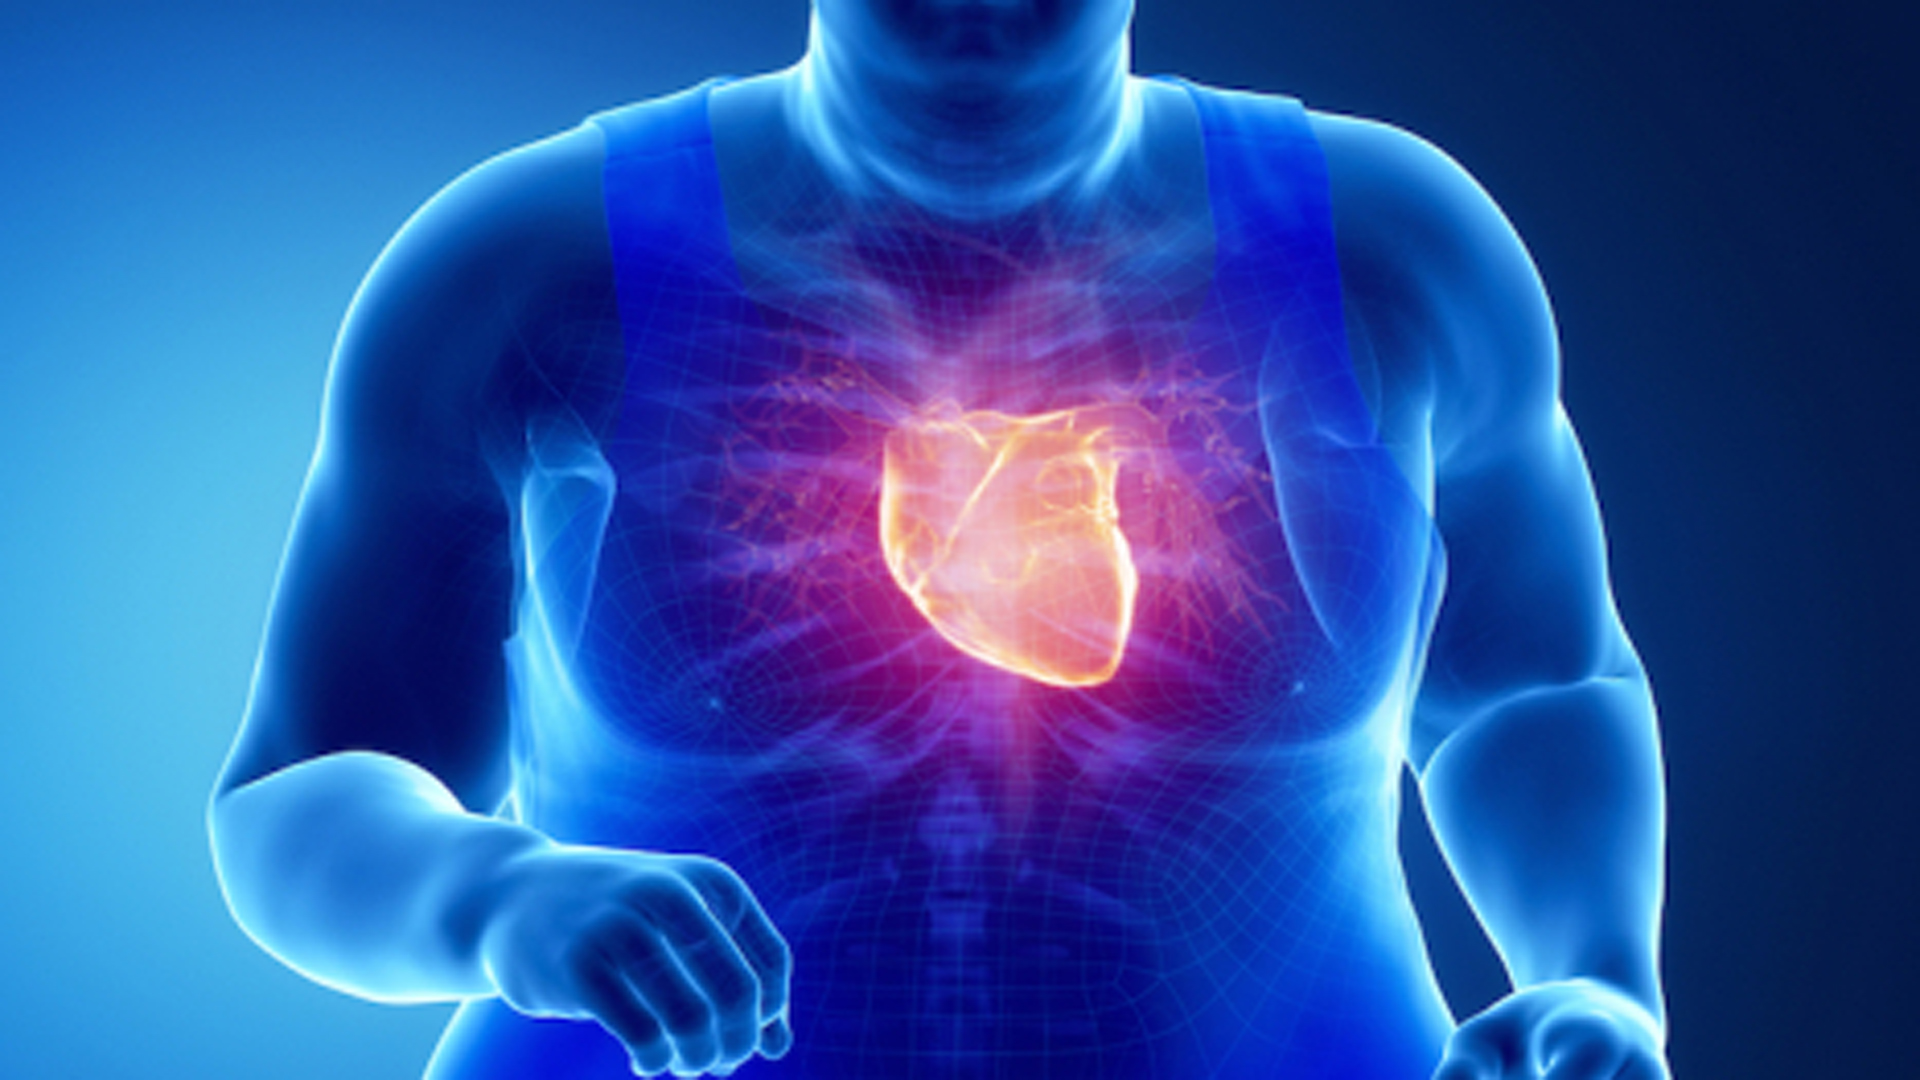 La obesidad aumenta el riesgo de enfermedades del corazón y, a la vez, la adiposidad puede dificultar el diagnóstico preciso de afecciones cardiovasculares